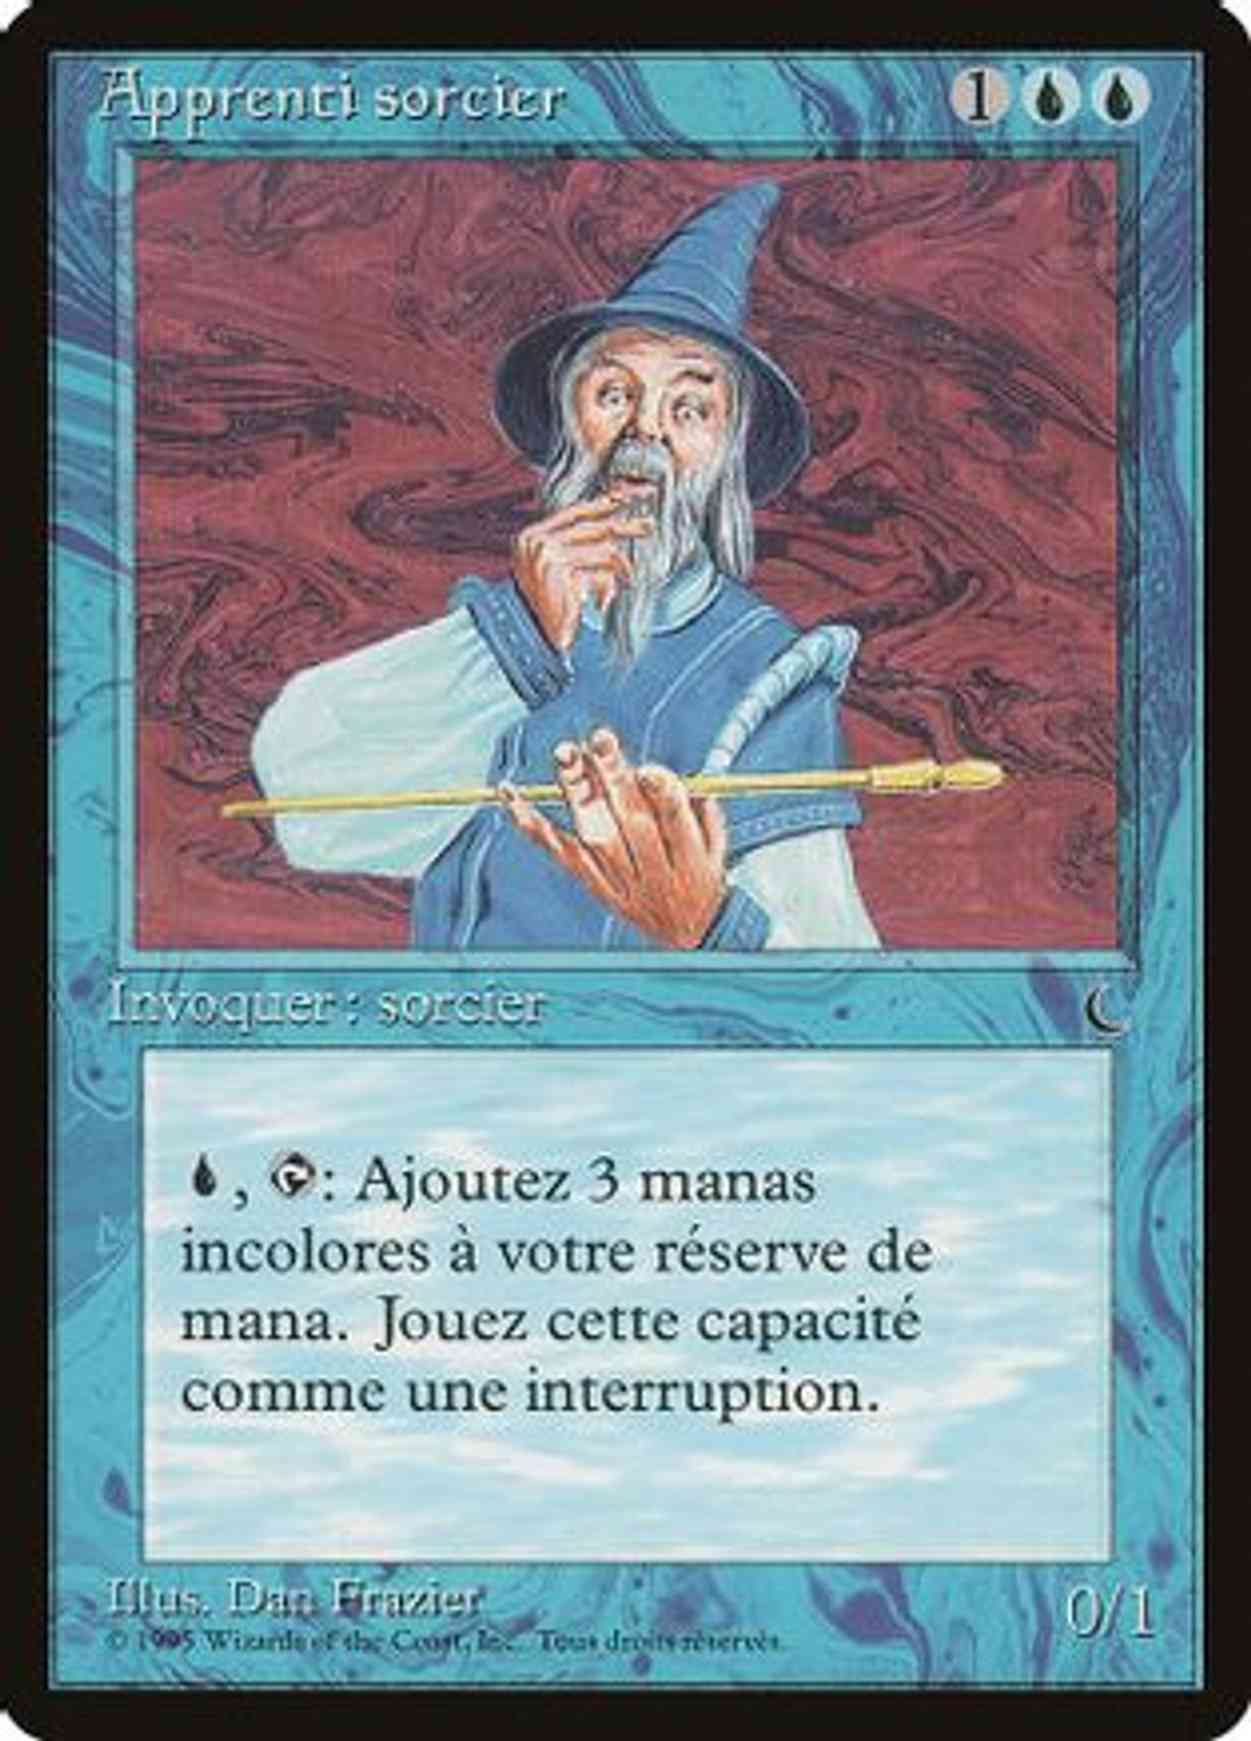 Apprentice Wizard (French) - "Apprenti sorcier" magic card front